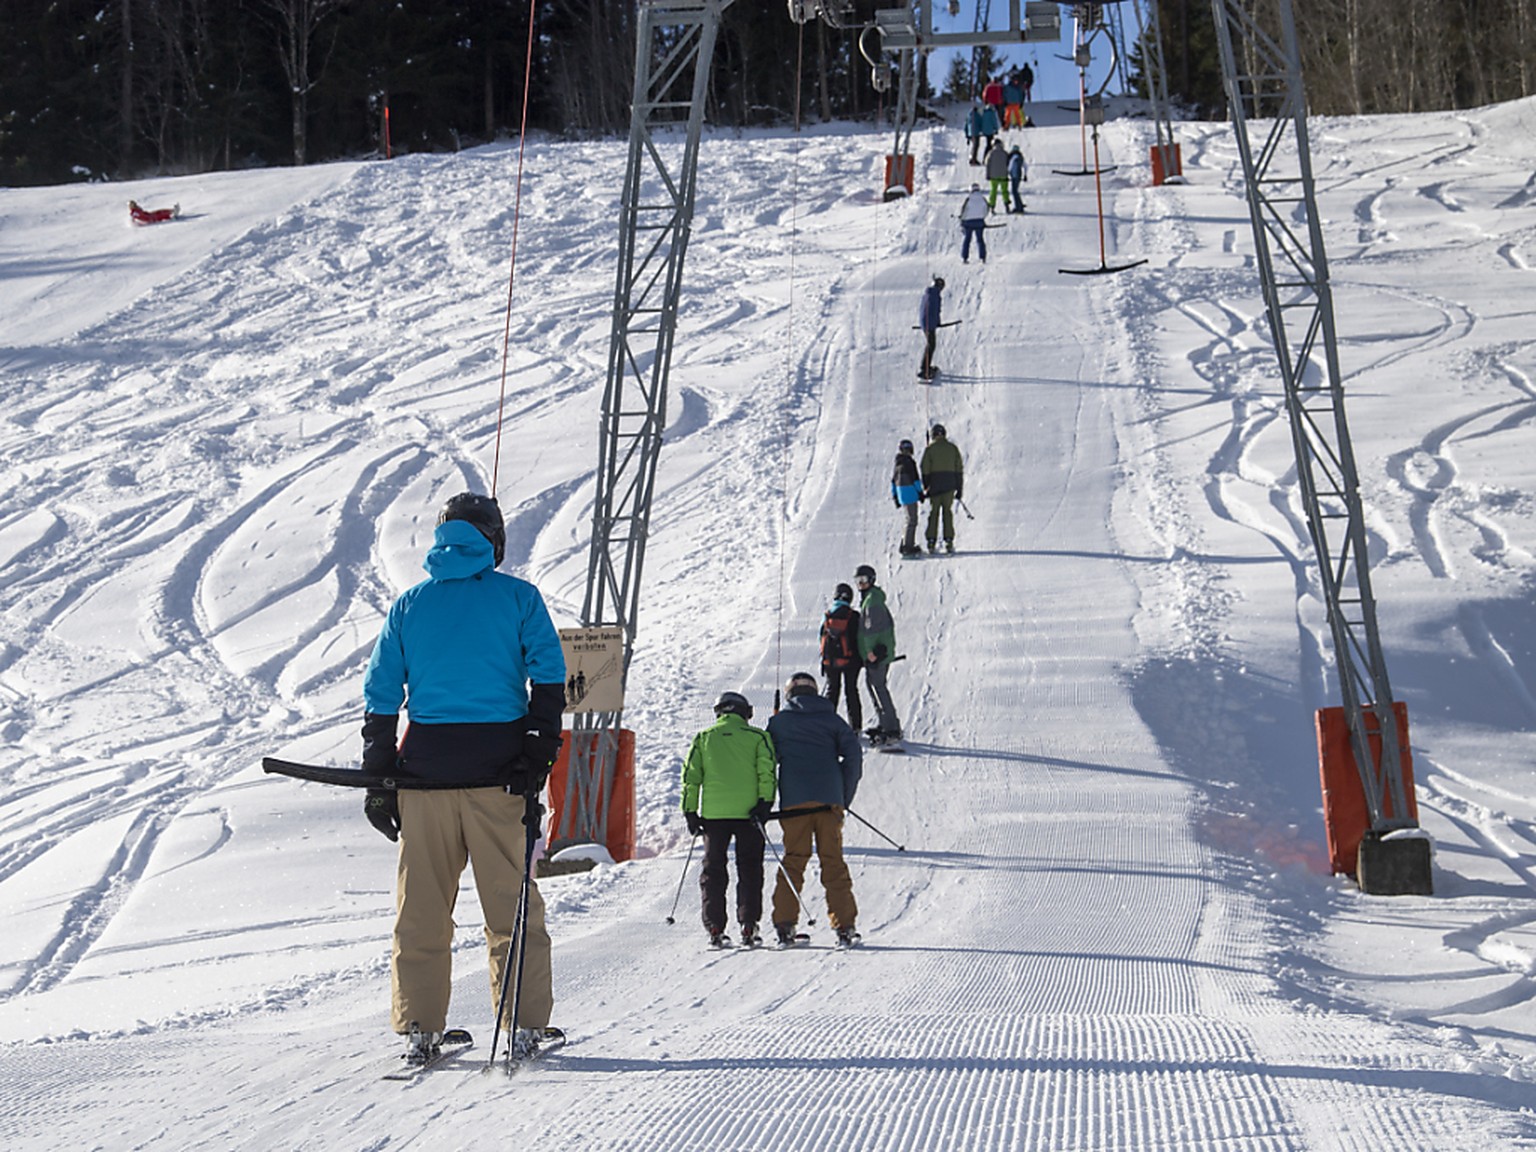 Bei Strommangel werden im nächsten Winter womöglich die Skilifte abgestellt.